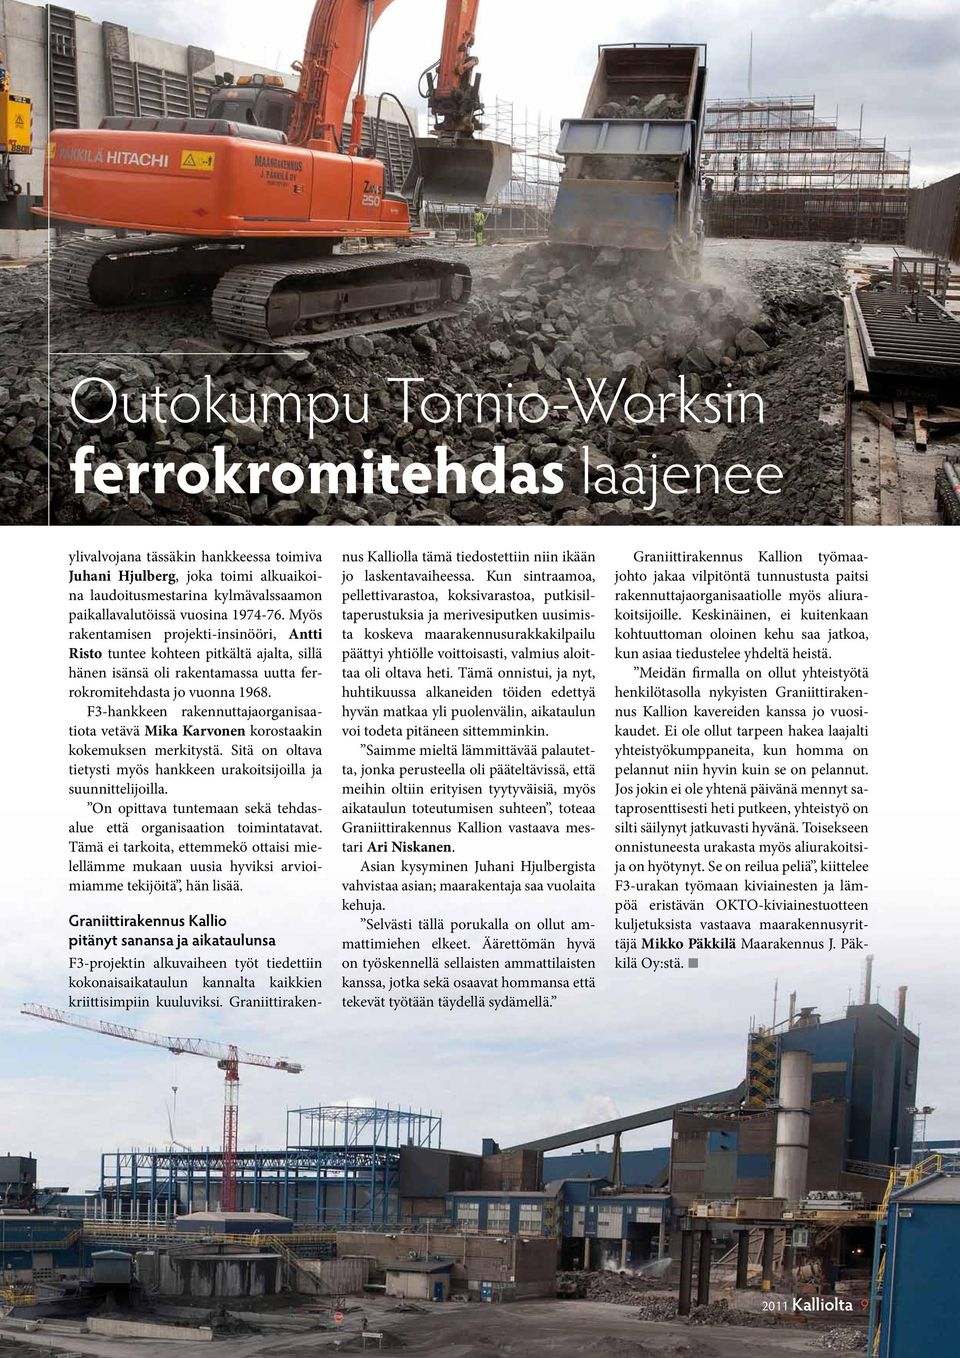 F3-hankkeen rakennuttajaorganisaatiota vetävä Mika Karvonen korostaakin kokemuksen merkitystä. Sitä on oltava tietysti myös hankkeen urakoitsijoilla ja suunnittelijoilla.